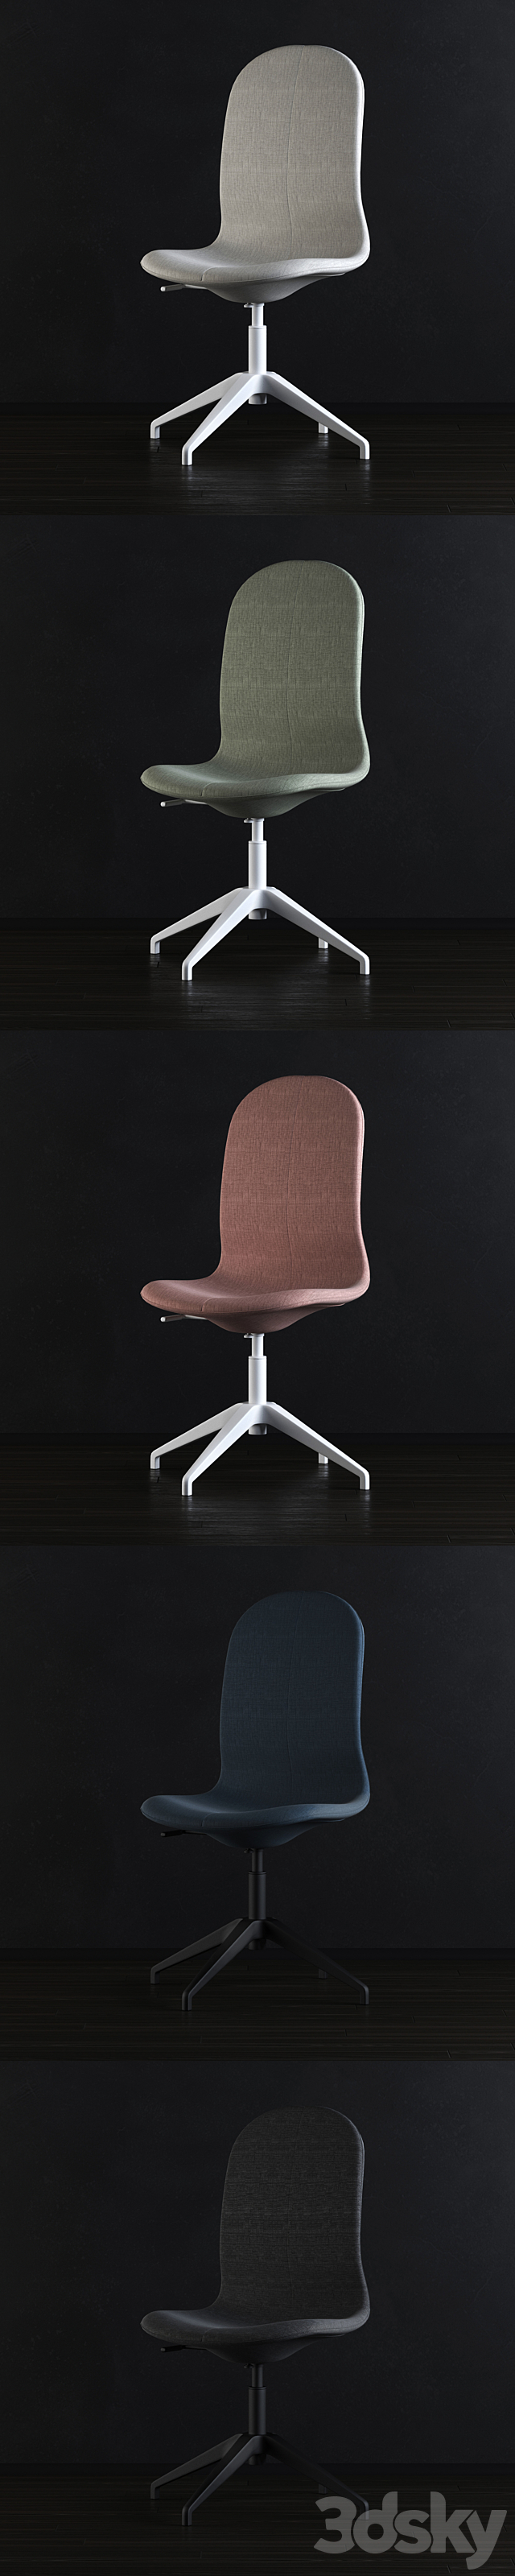 3d models chair  ikea langfjall chair 01